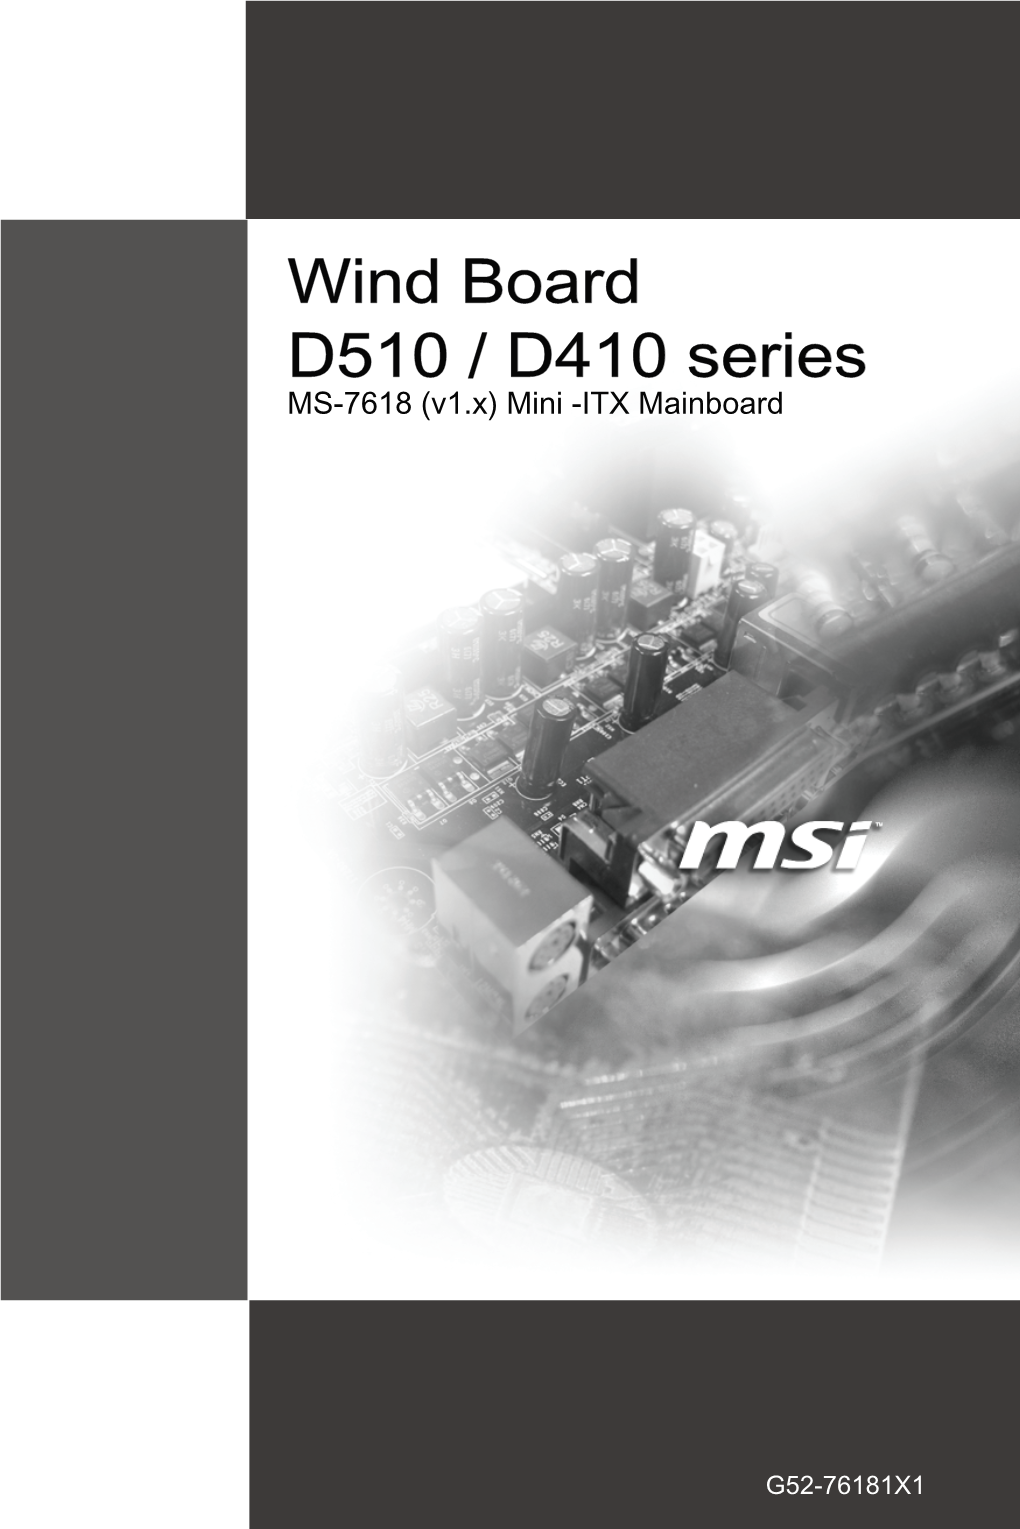 Wind Board D510 / D410 Series